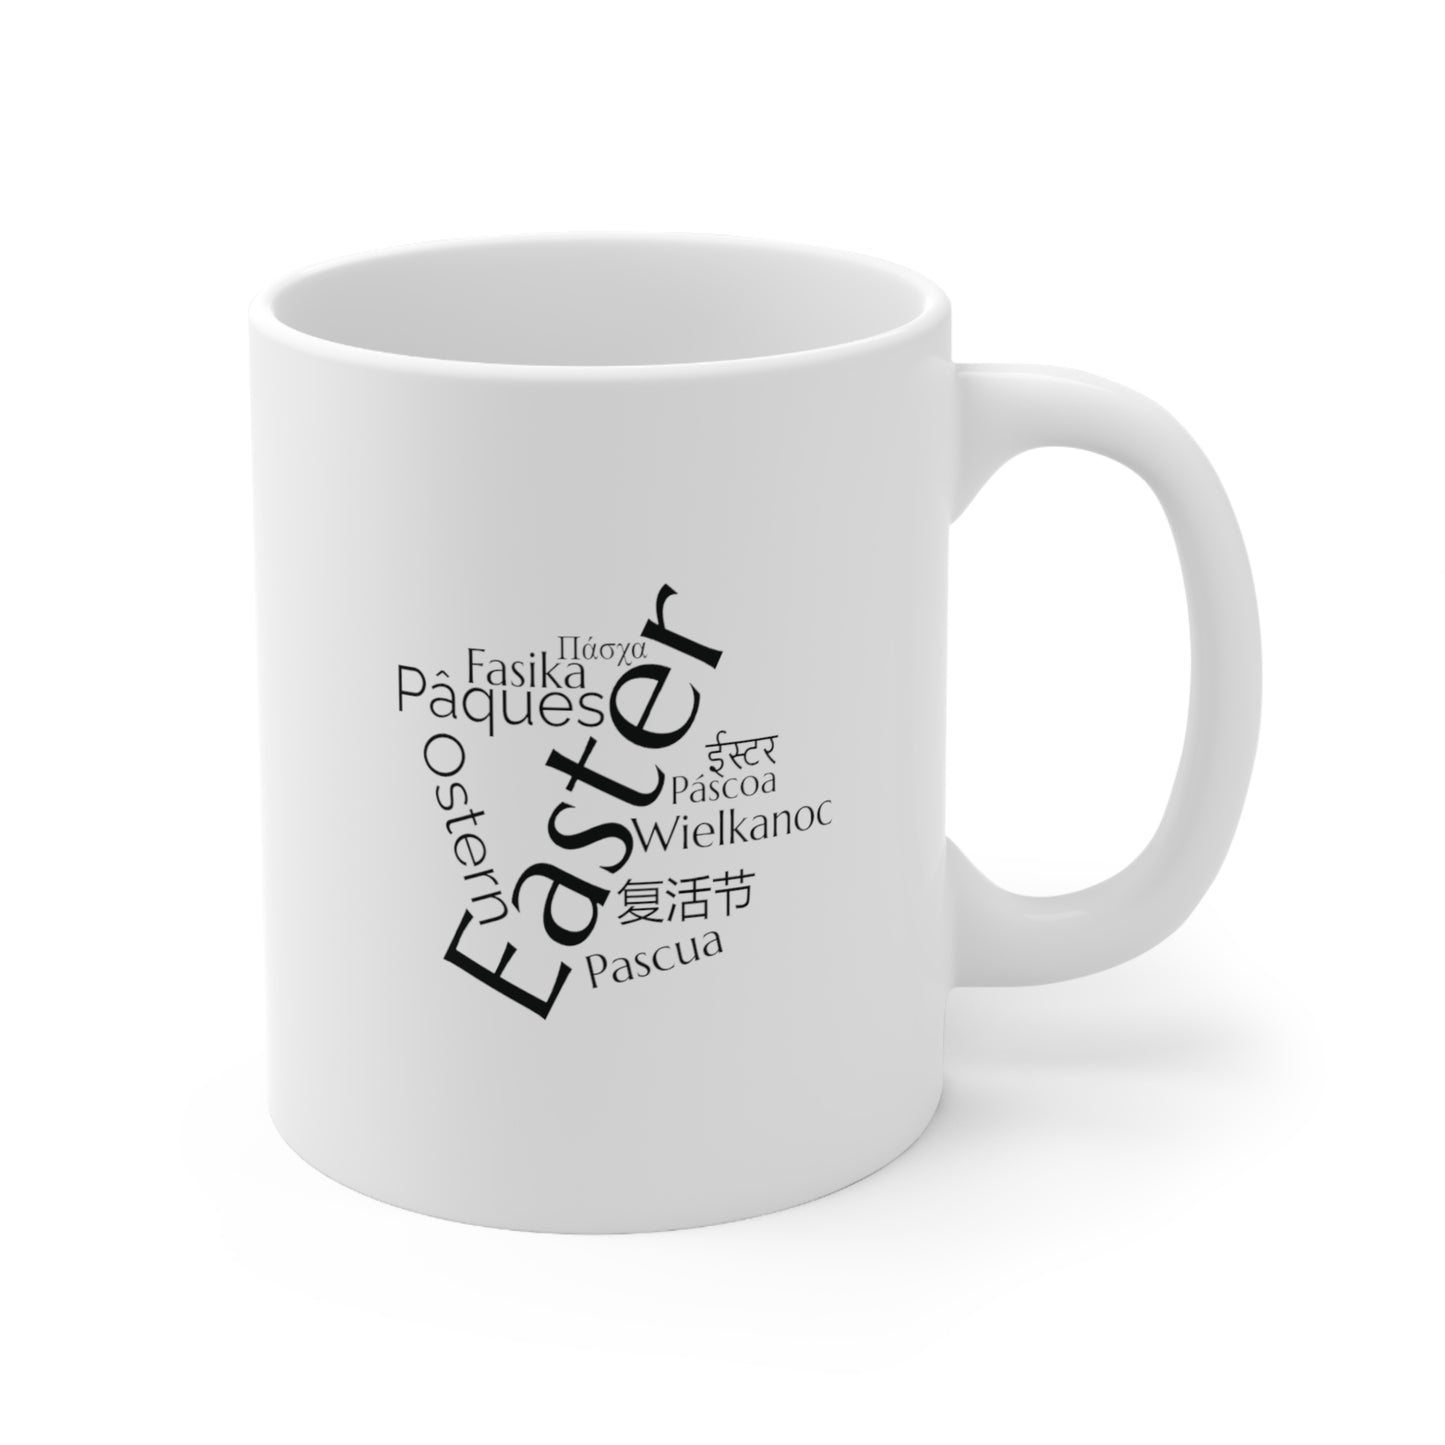 Easter word mug, geography mug, gift, mug, coffee cup, language mug, wordcloud mug, easter gift, world, languages